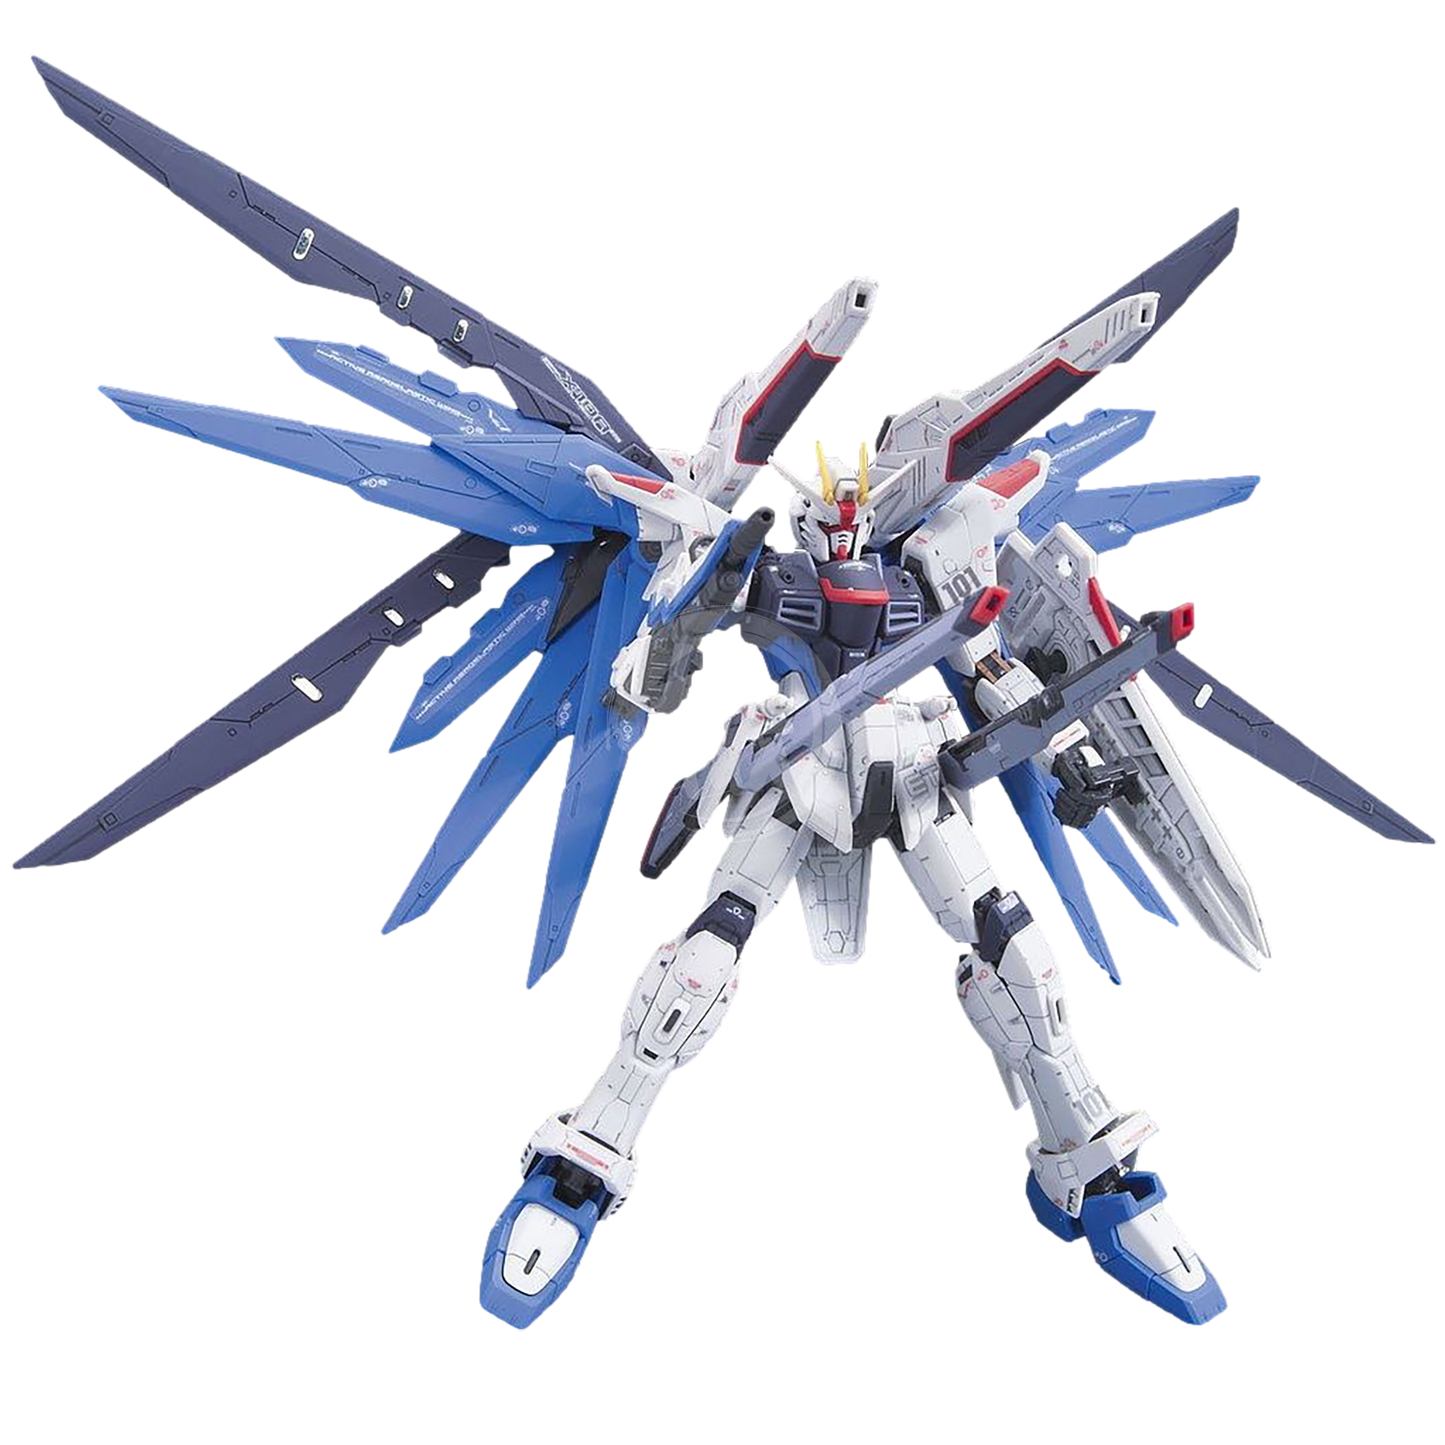 Bandai - RG Freedom Gundam - ShokuninGunpla